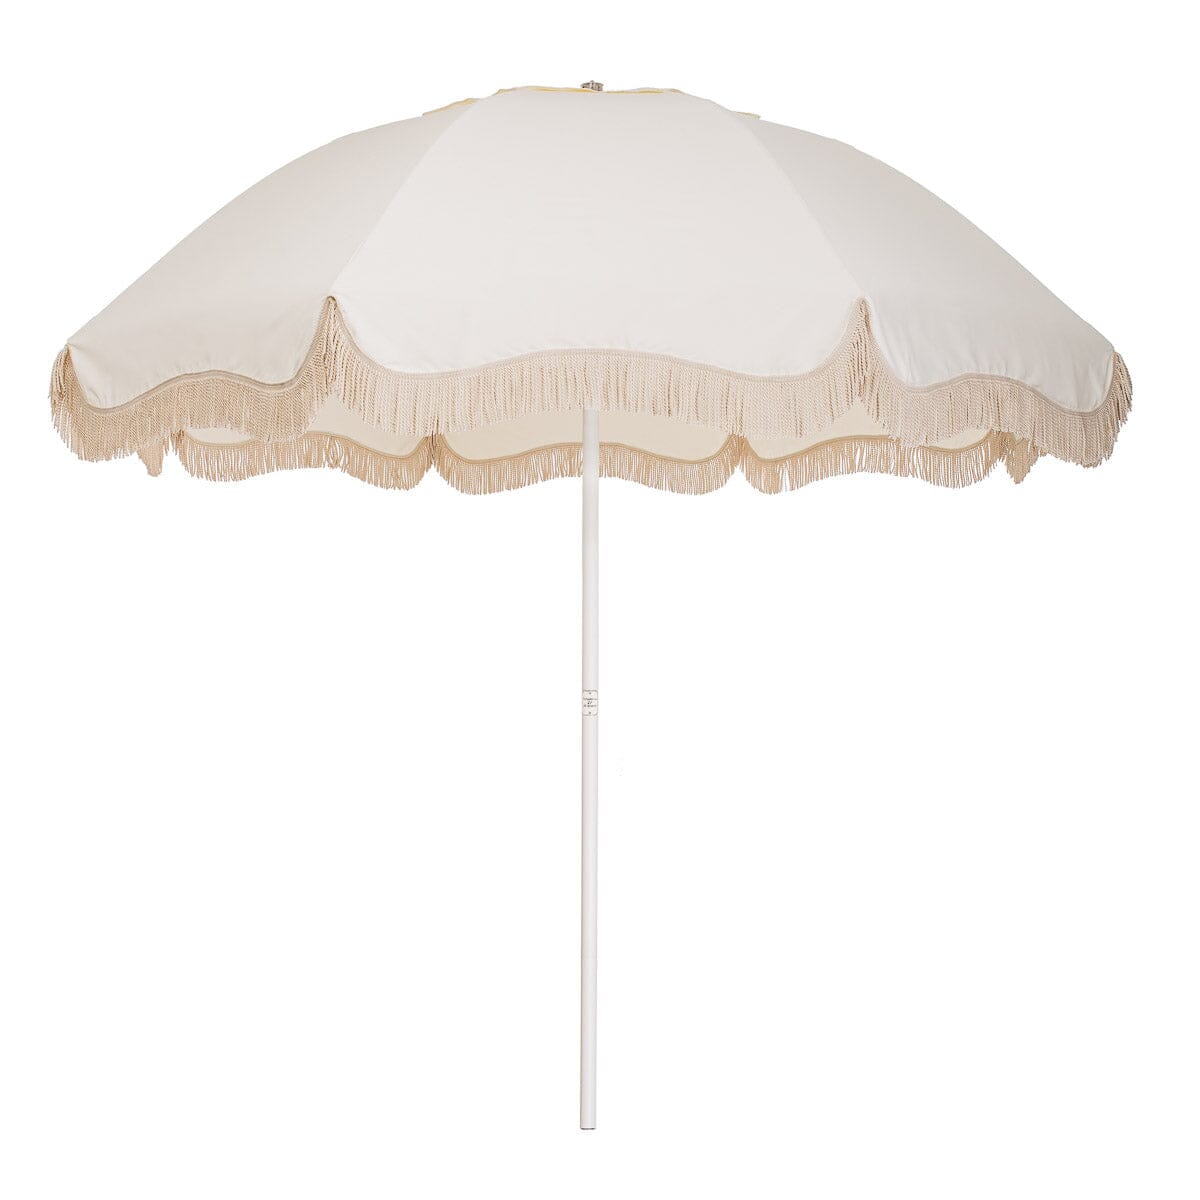 The Patio Umbrella - Antique White Patio Umbrella Business & Pleasure Co Aus 